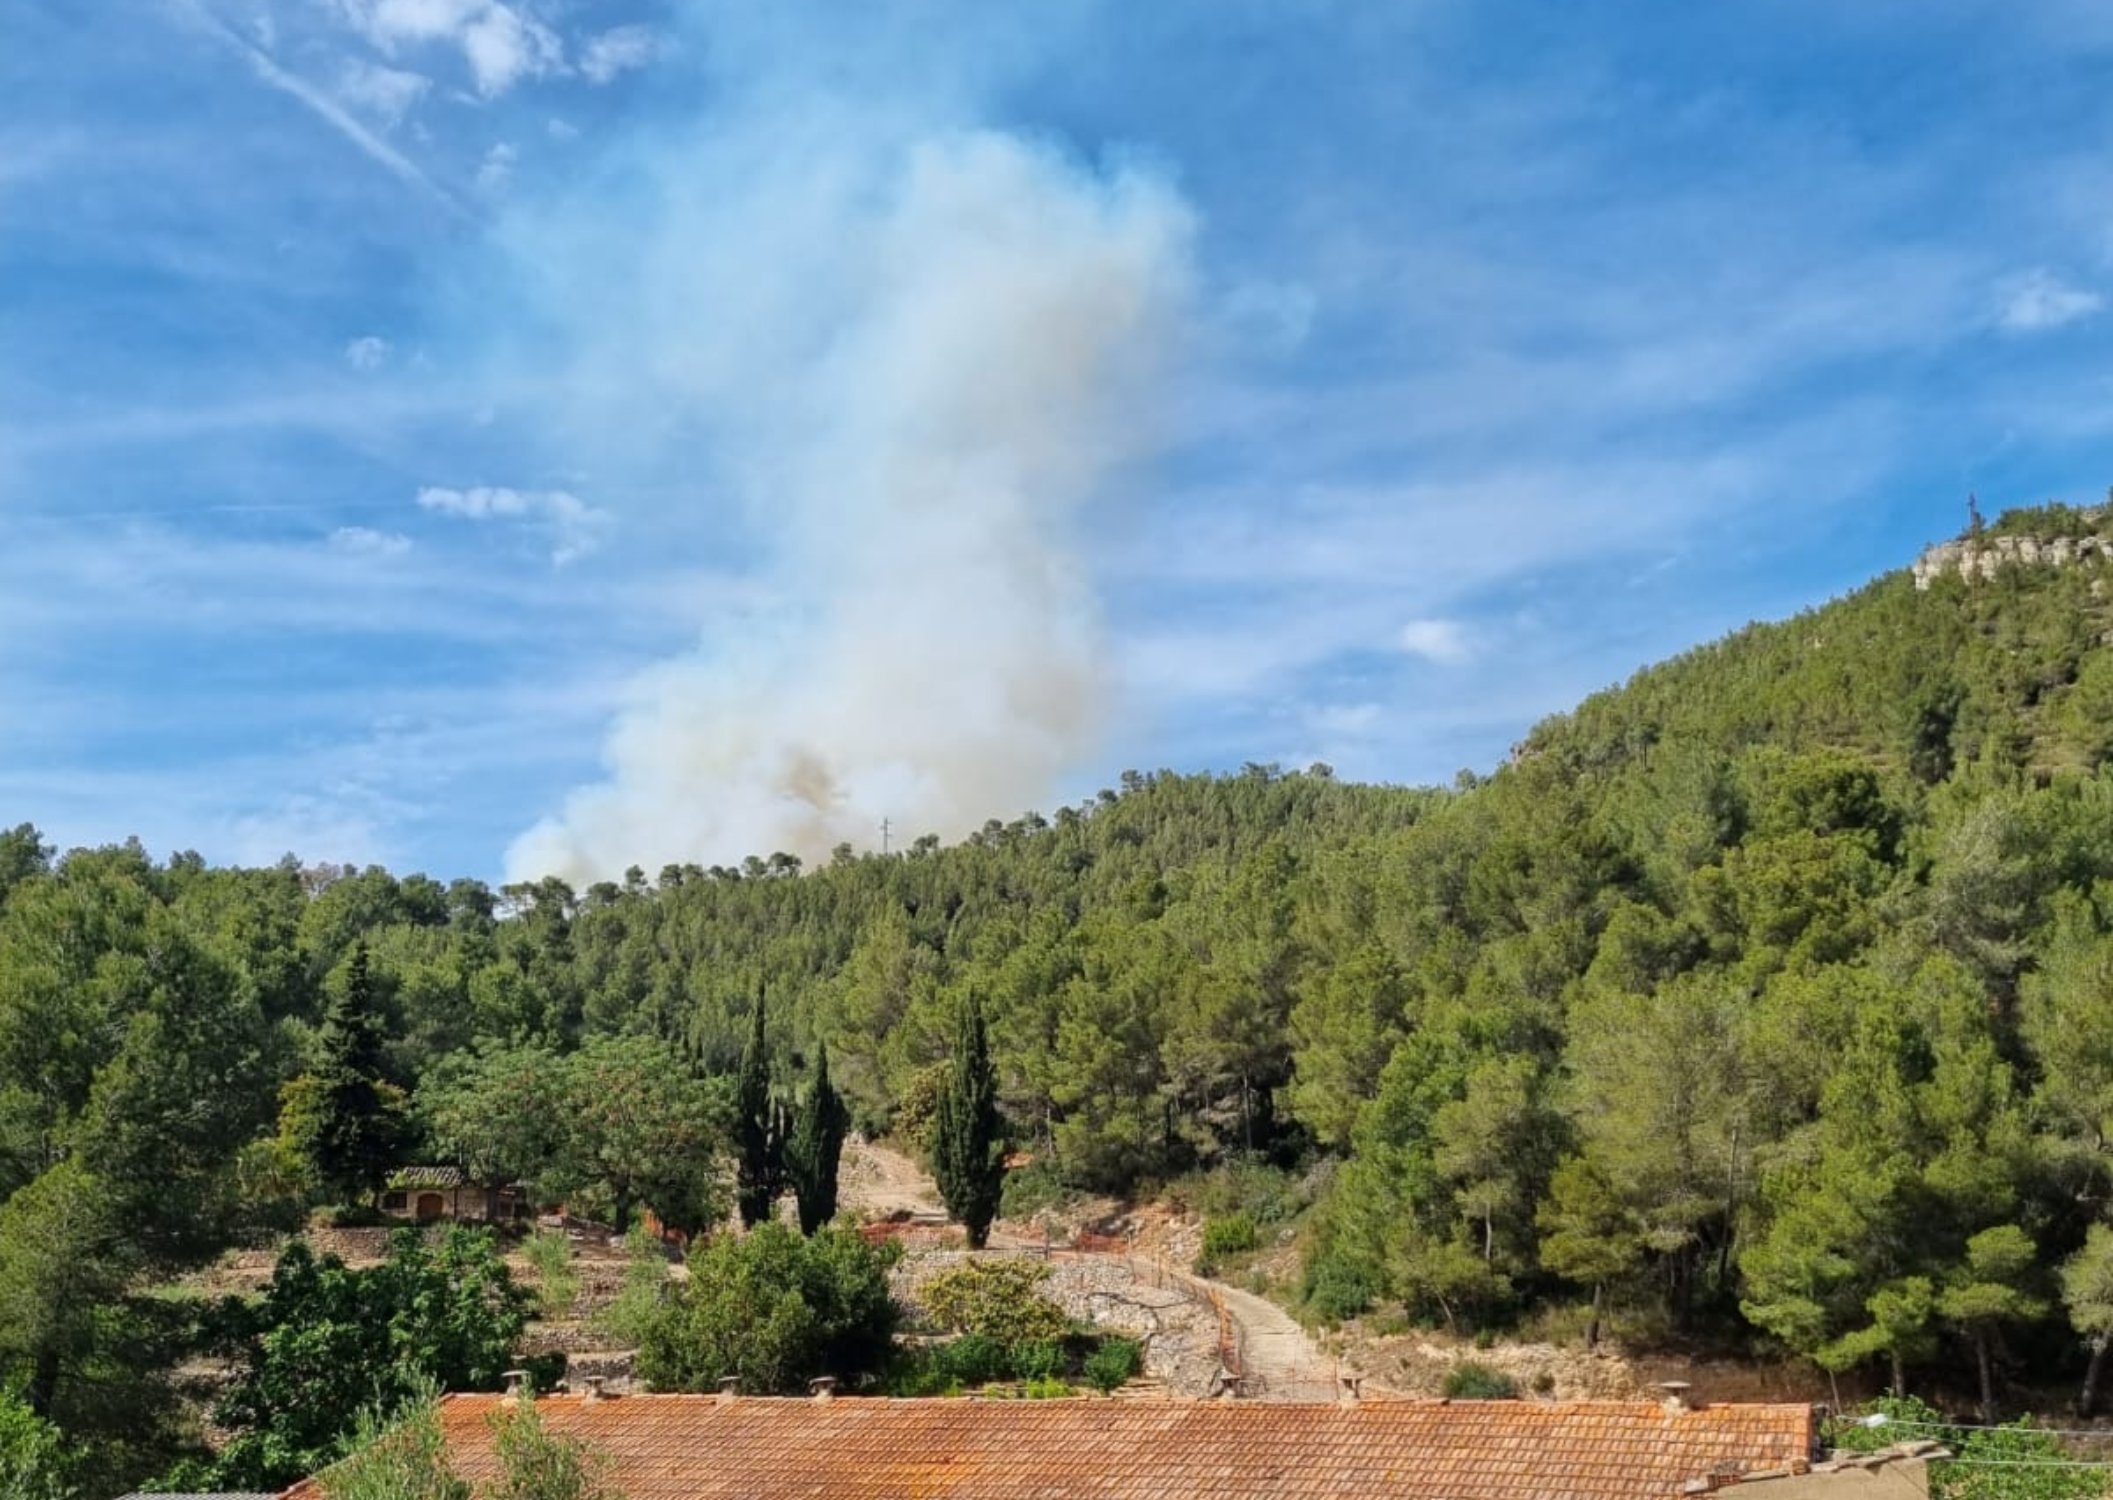 Incendio forestal en Vandellòs: un fuego reaviva cuando parecía apagado y se descontrola